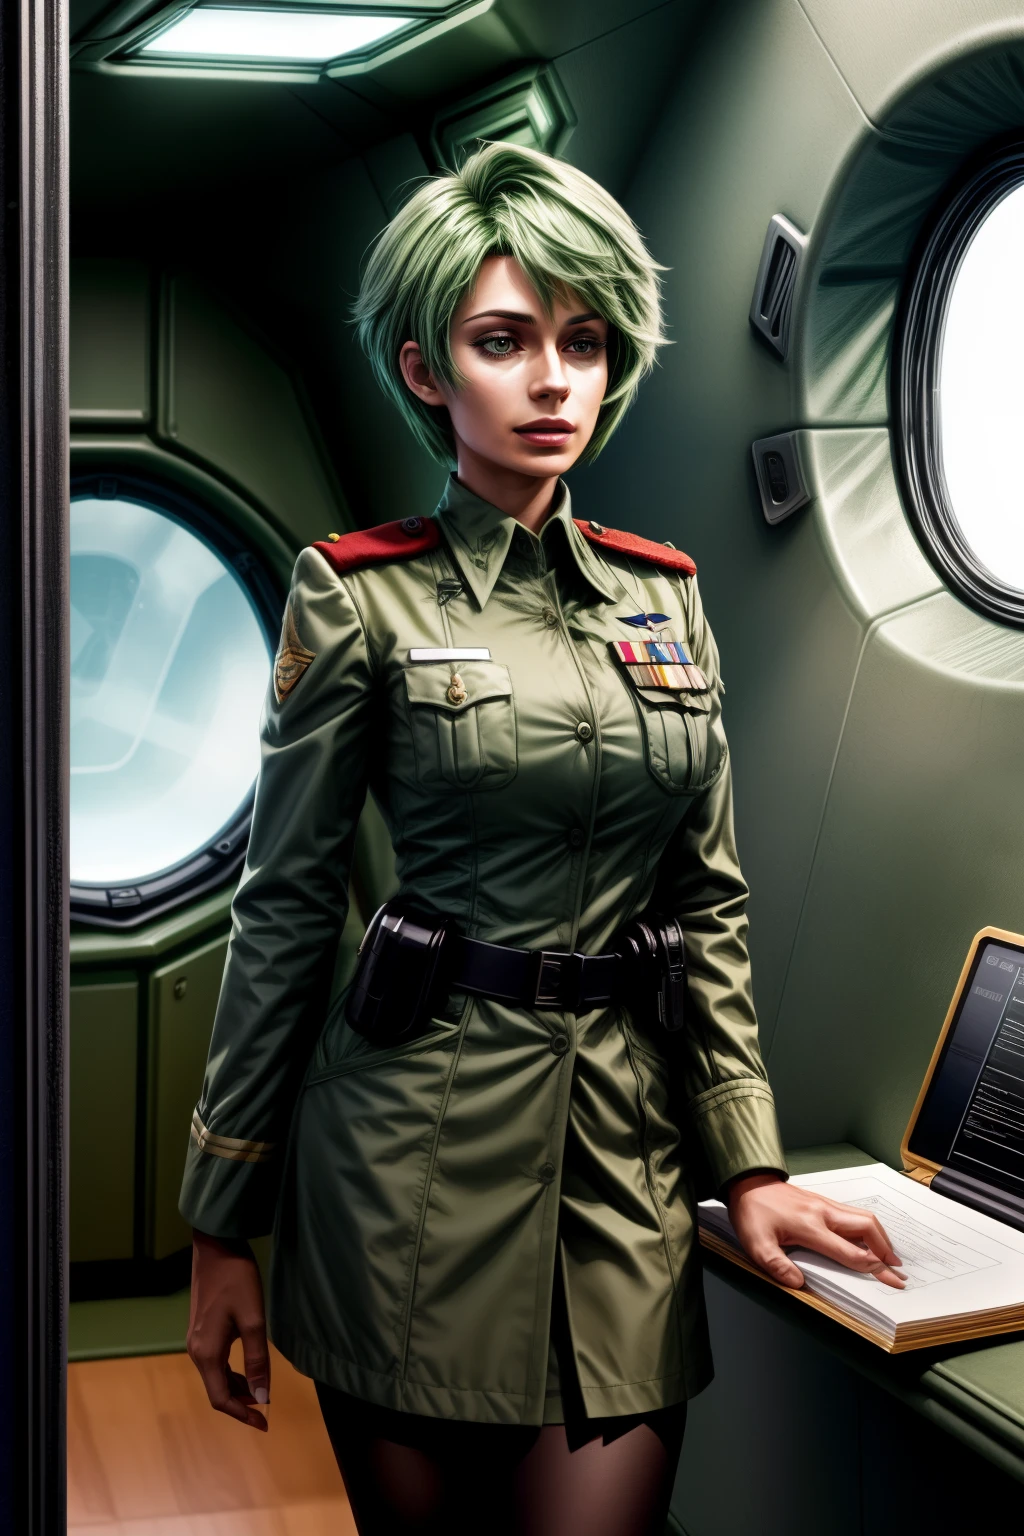 フレデリカ・グリーンヒル, 25歳, ショートカット, 緑の髪, 中尉&#39;制服, クリップボードを持っている, インターホンで話す, 宇宙船の内部